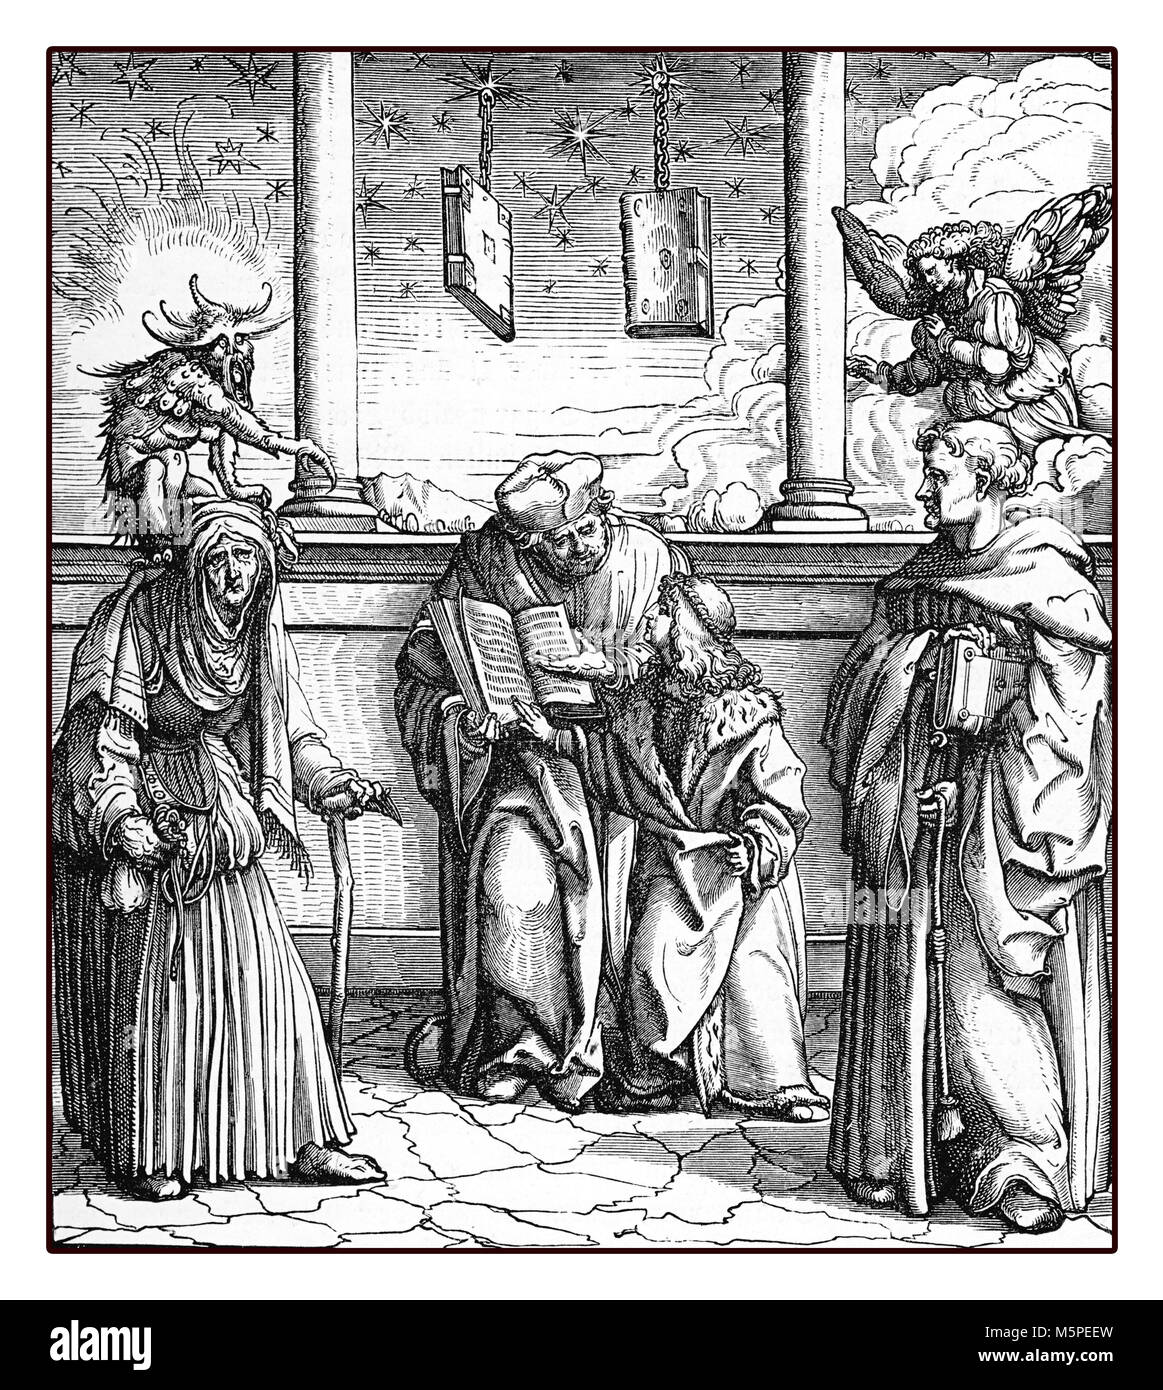 Heiligen Römischen Kaiser Maximilian I. die Alchemie der gold Entscheidungsträger lernt, Reproduktion von einem Stich von Hans Burgkmair, Jahr 1516 Stockfoto